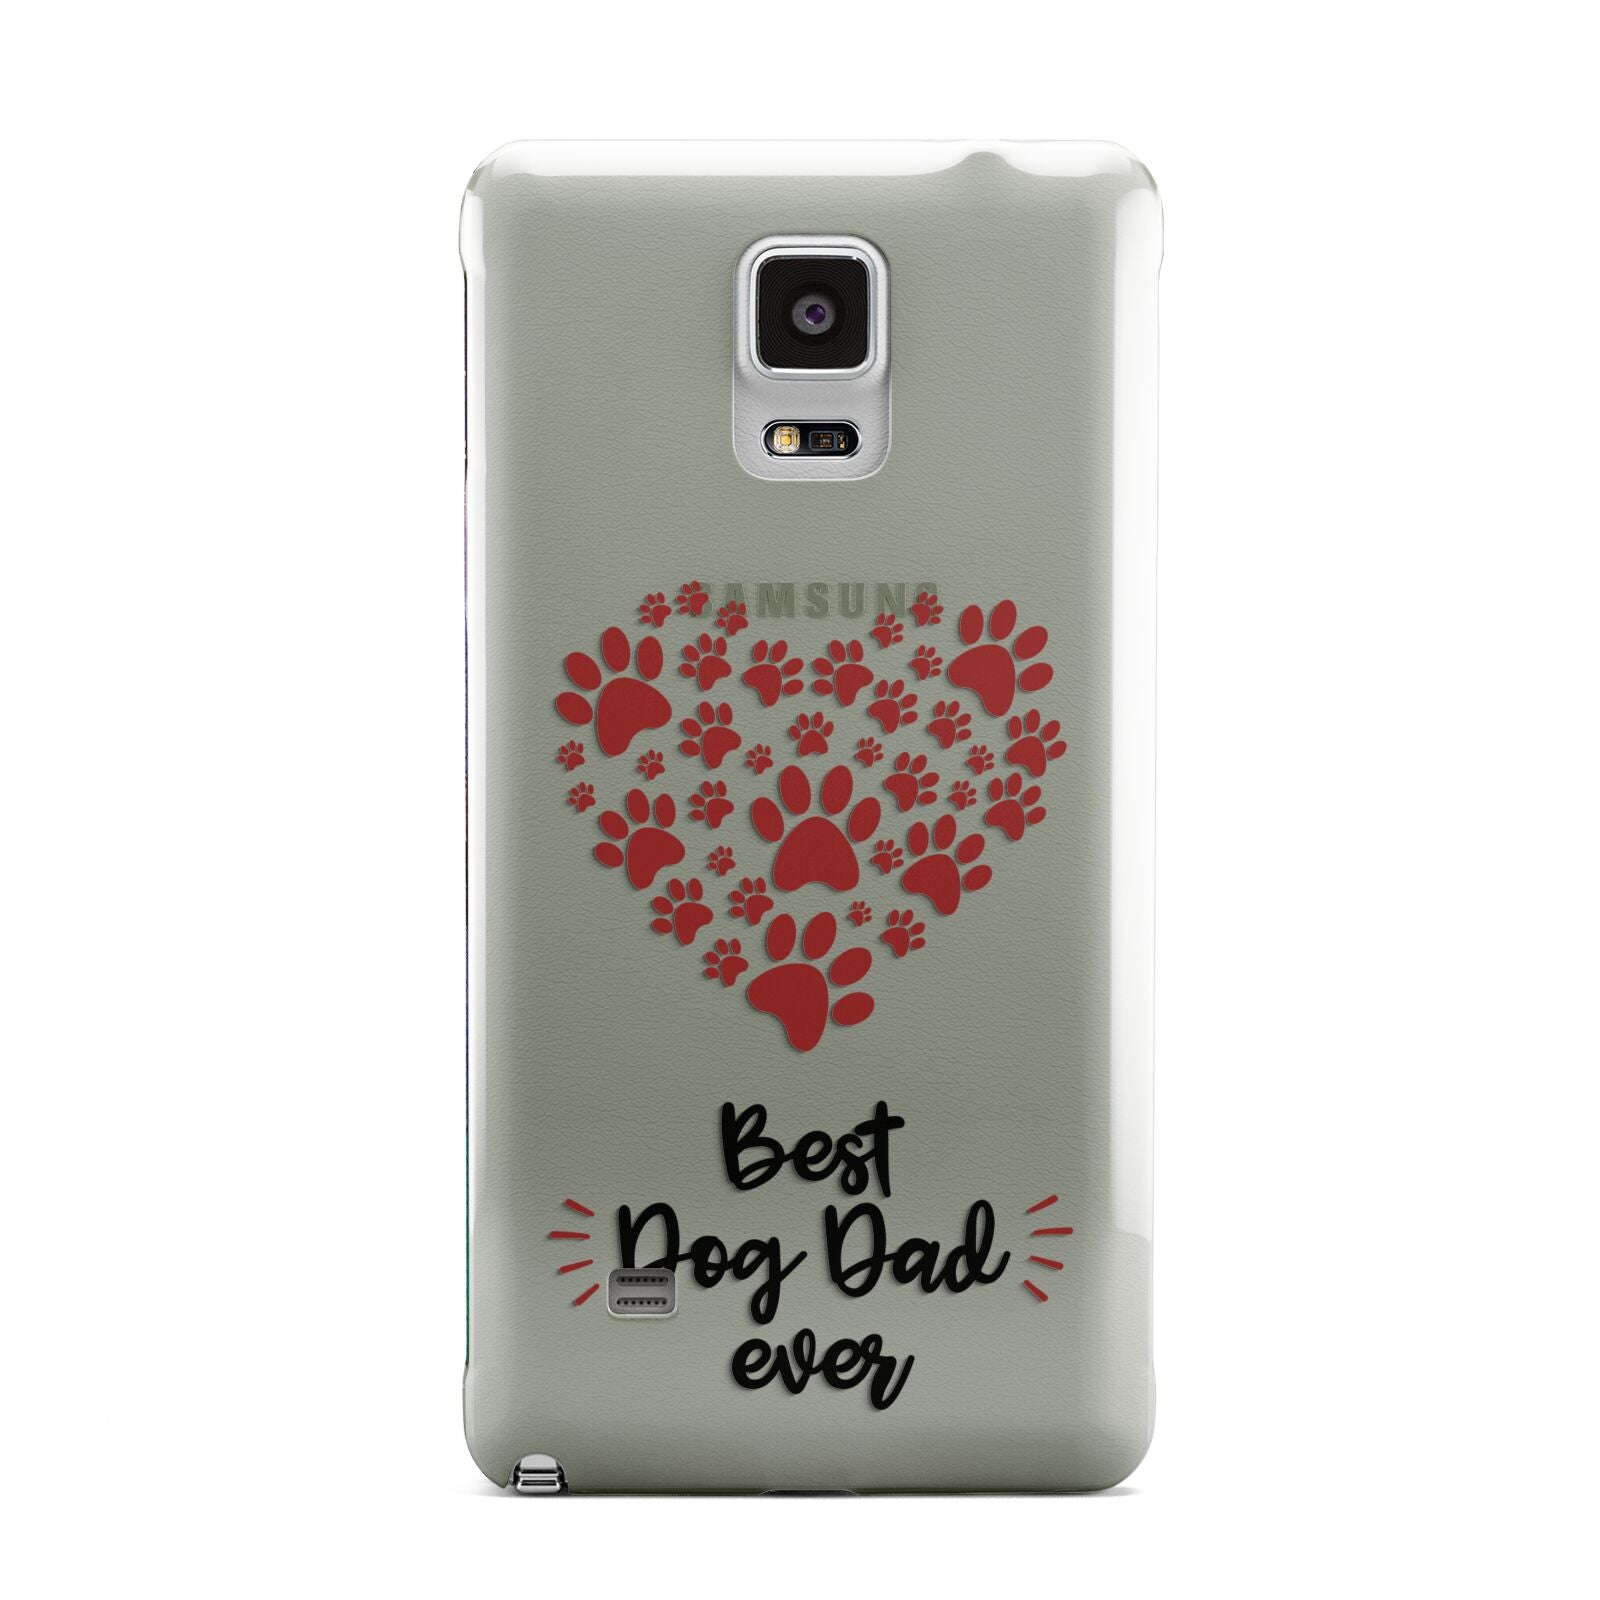 Best Dog Dad Paws Samsung Galaxy Note 4 Case